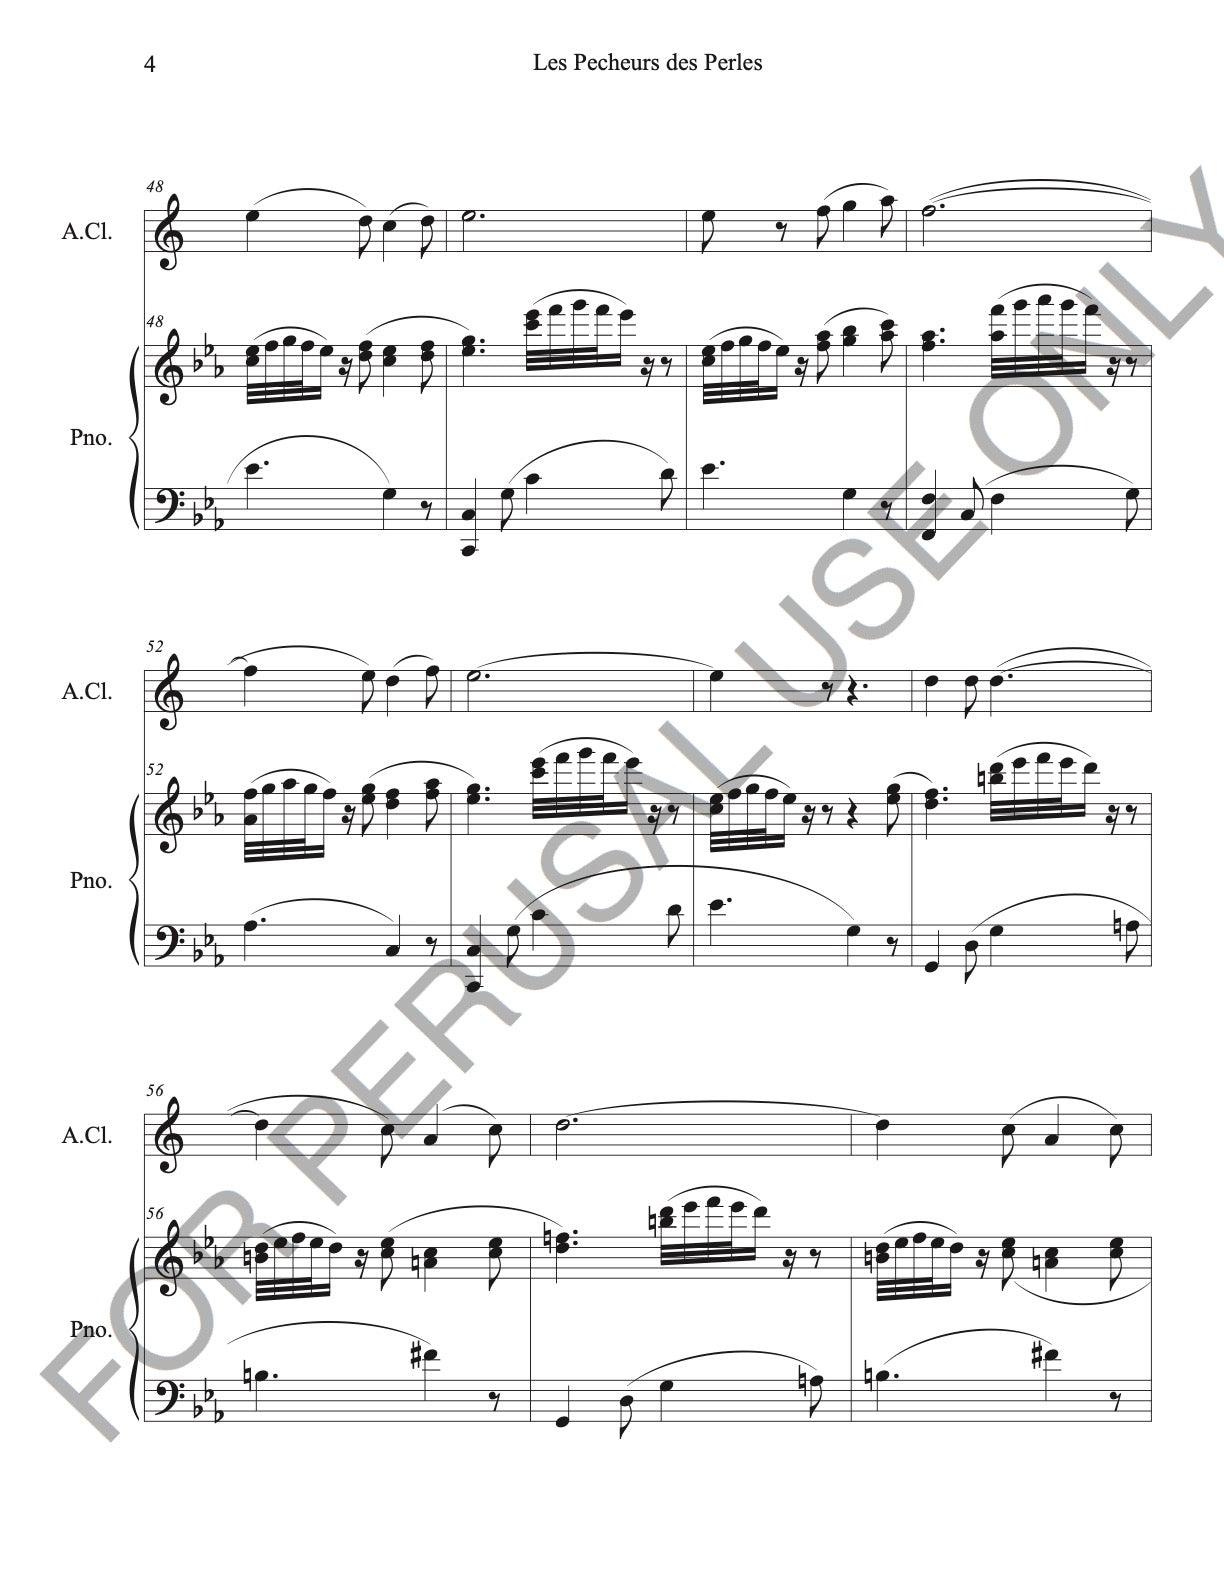 Alto Clarinet and Piano: Je crois entendre encore Les Pecheurs de Perles - ChaipruckMekara